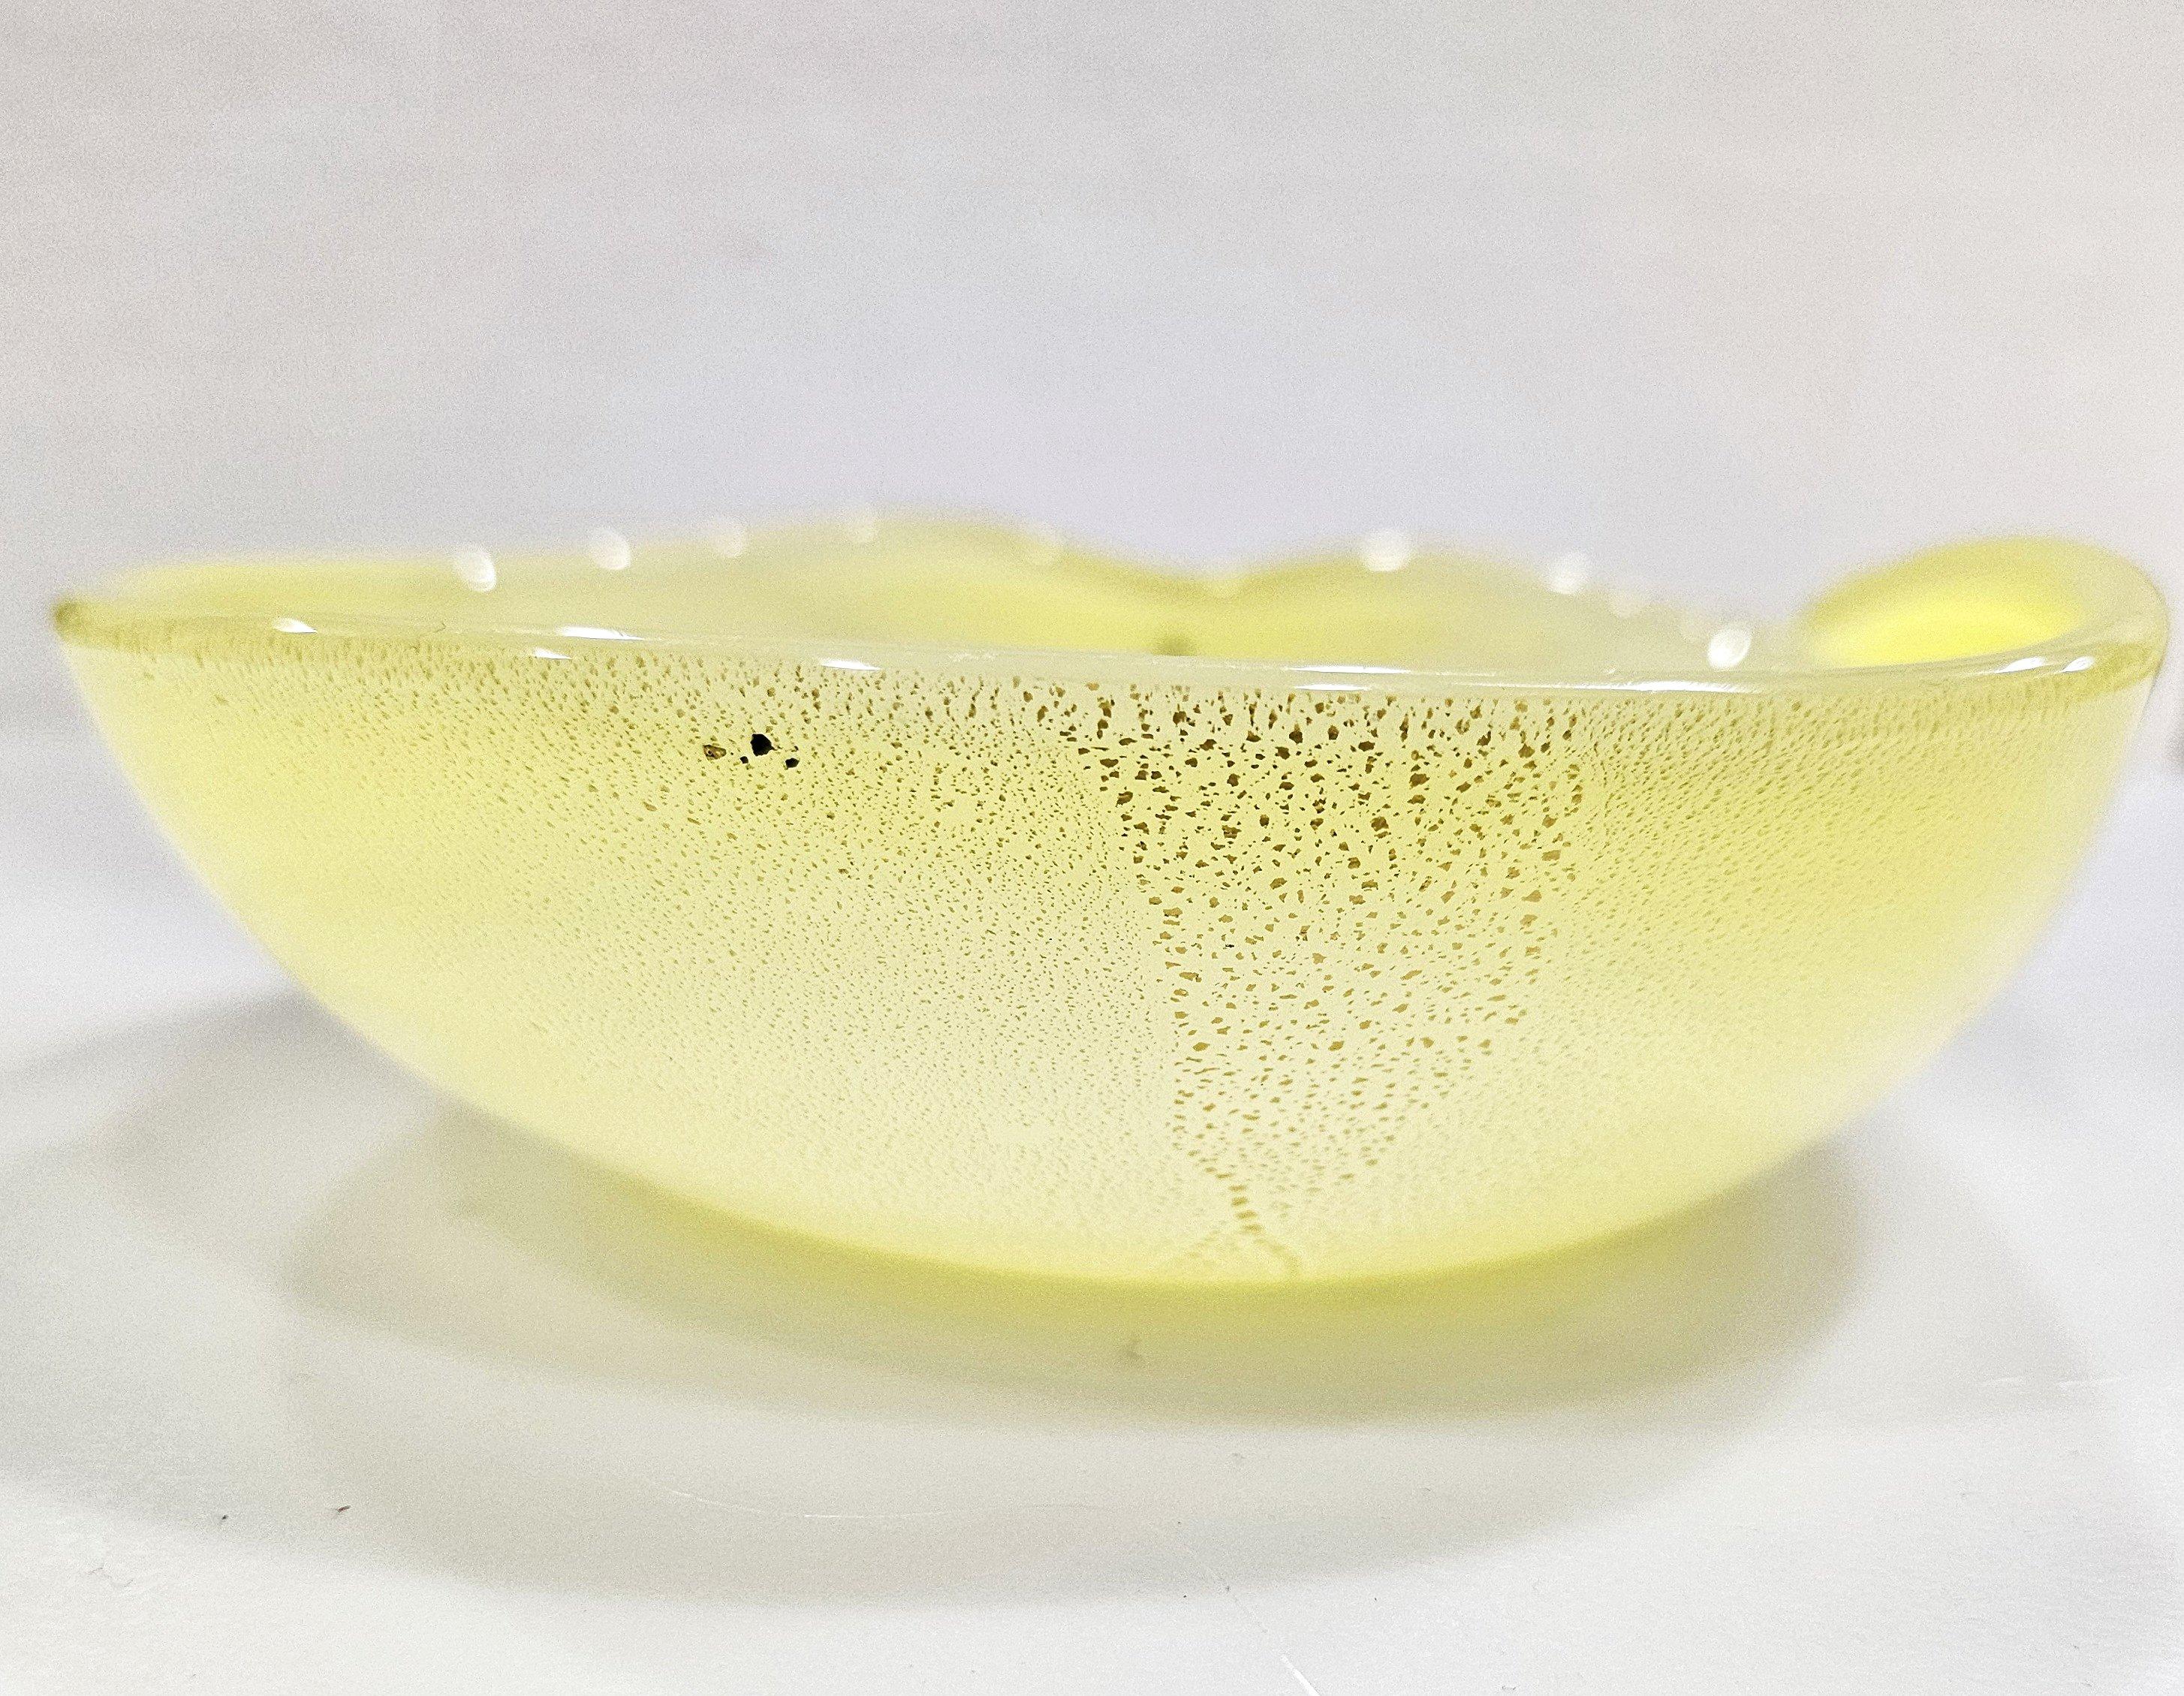 Vintage Murano Glas Schale / Trinket Dish / Catch-All, Opaline w / Gold Fleck
Ungefähr 5,5 x 5 x 1,5 Zoll.
Schöne Vintage Zustand ohne Risse oder Chips.

Die Maße sind ungefähre Angaben. Bitte beachten Sie, dass die Farbe auf Ihrem Monitor und/oder